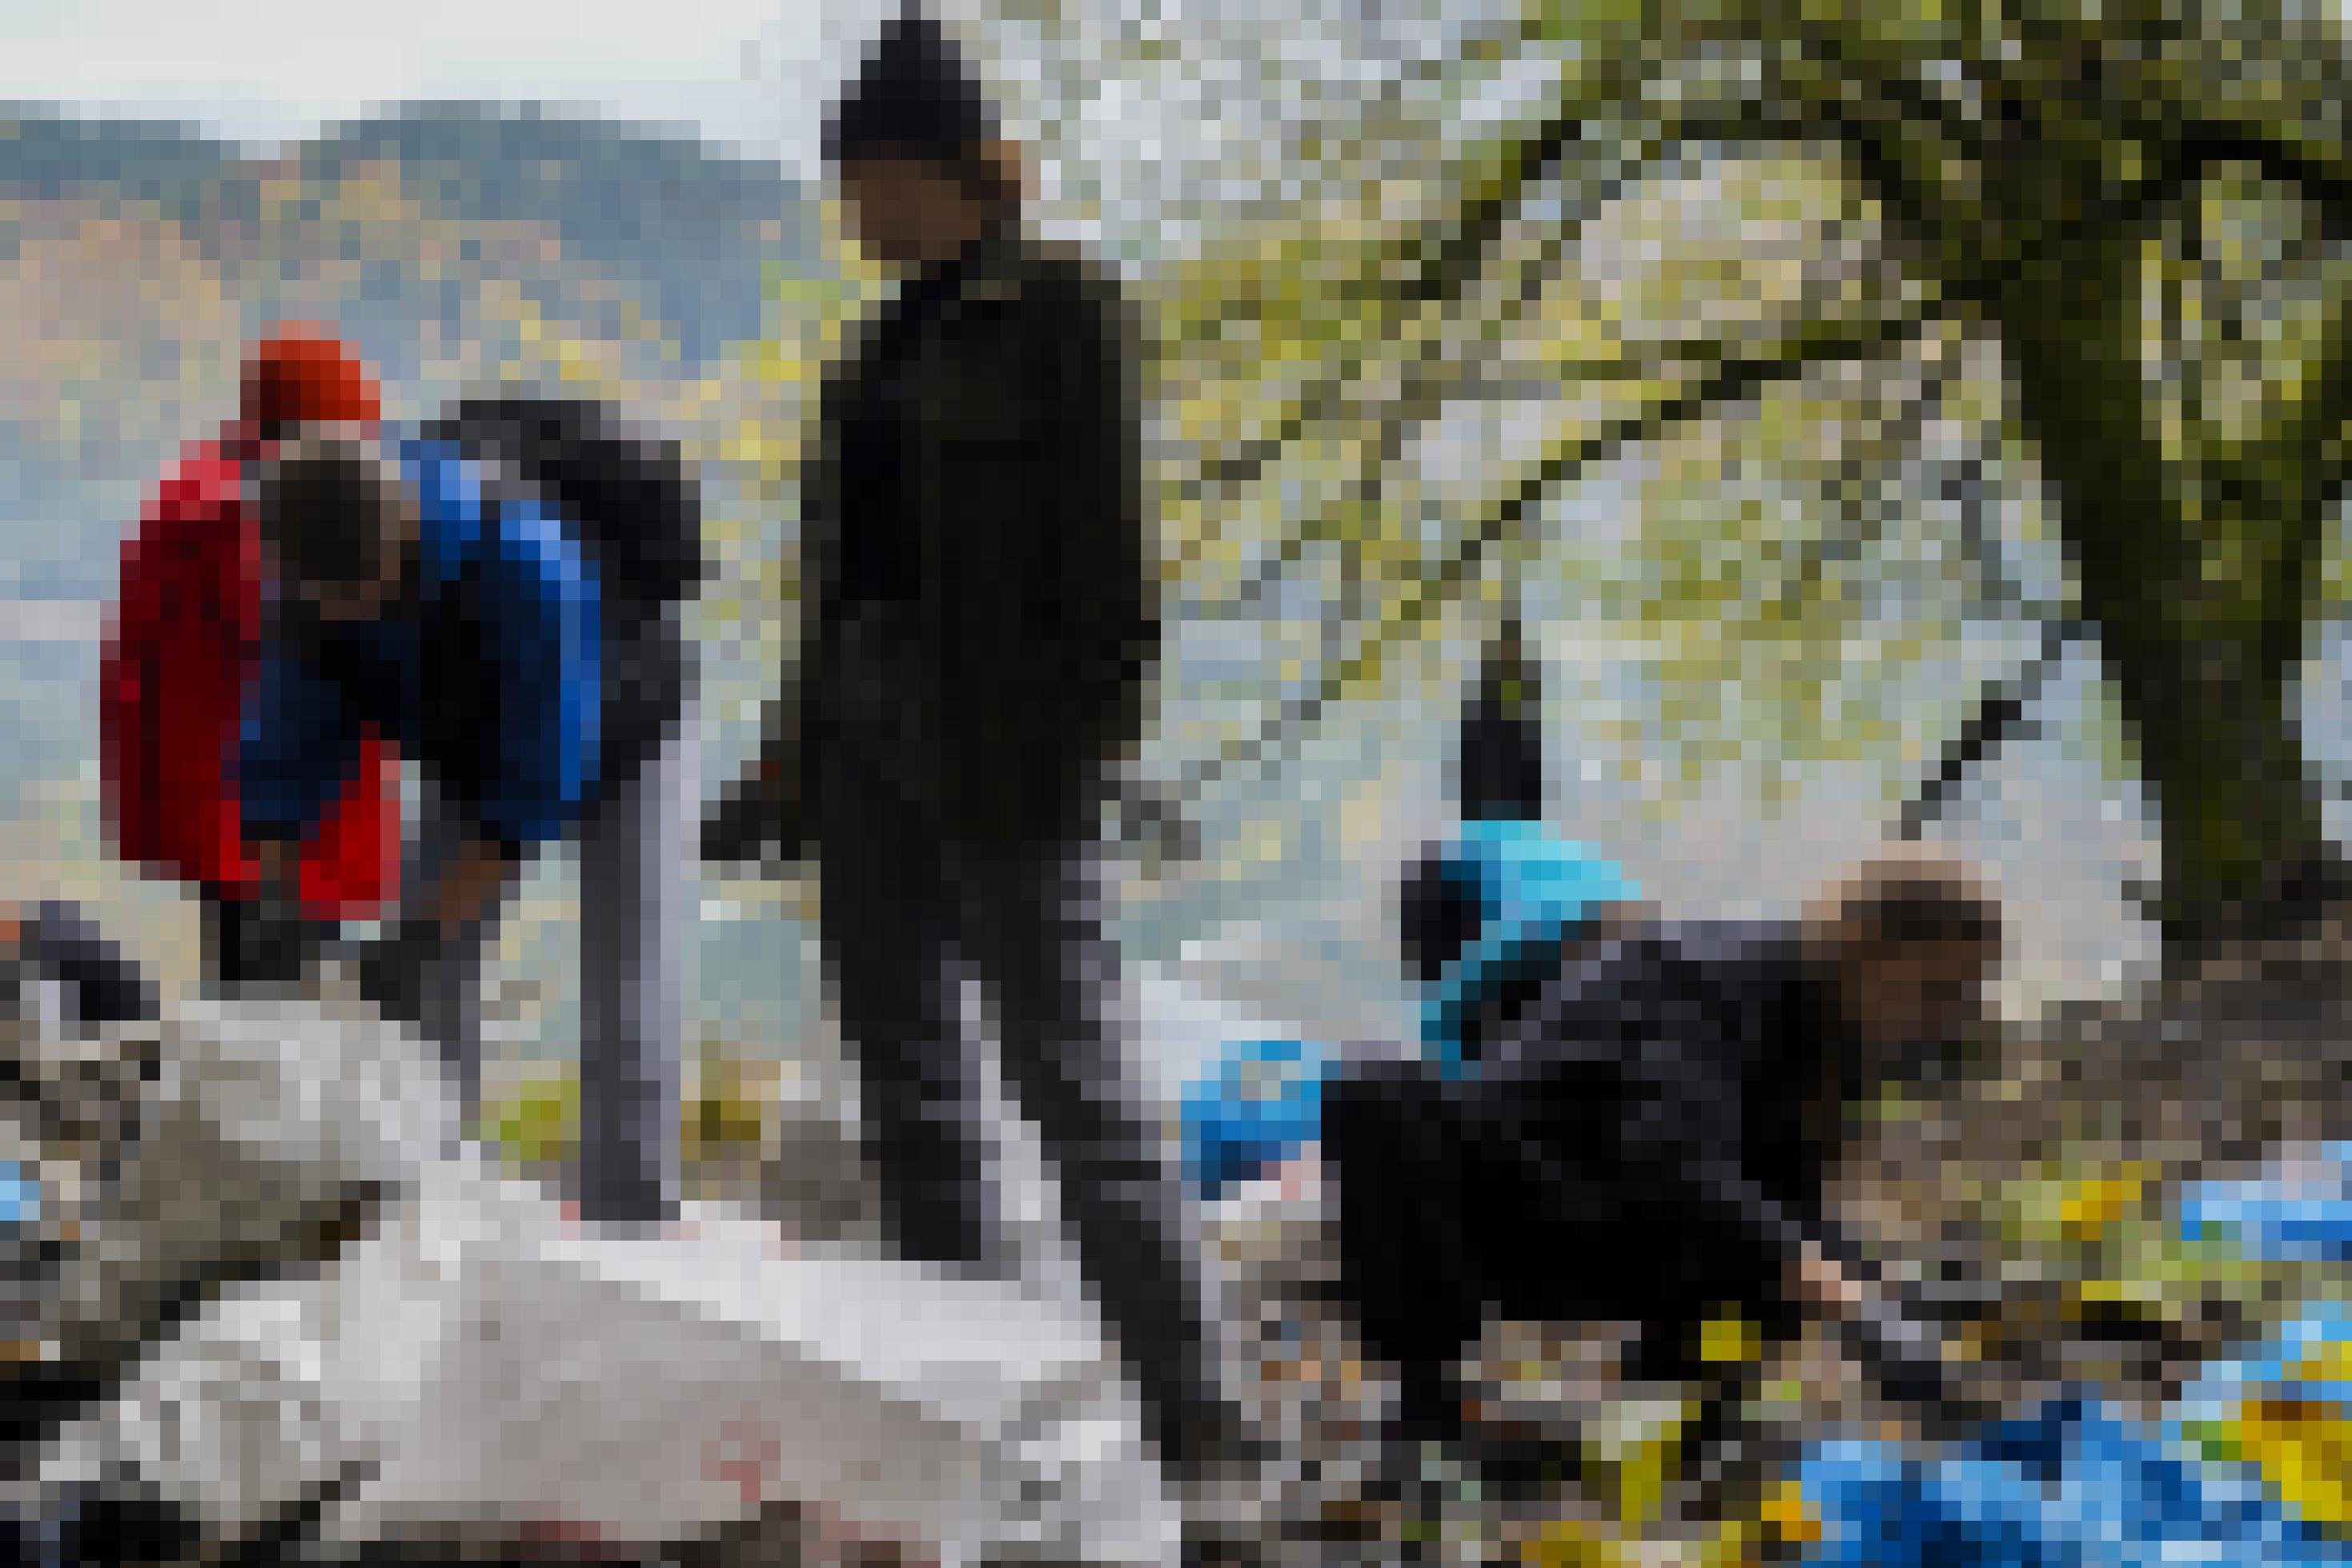 Menschen reinigen mit verschiedenen Müllsäcken den Waldboden in den Karpaten.